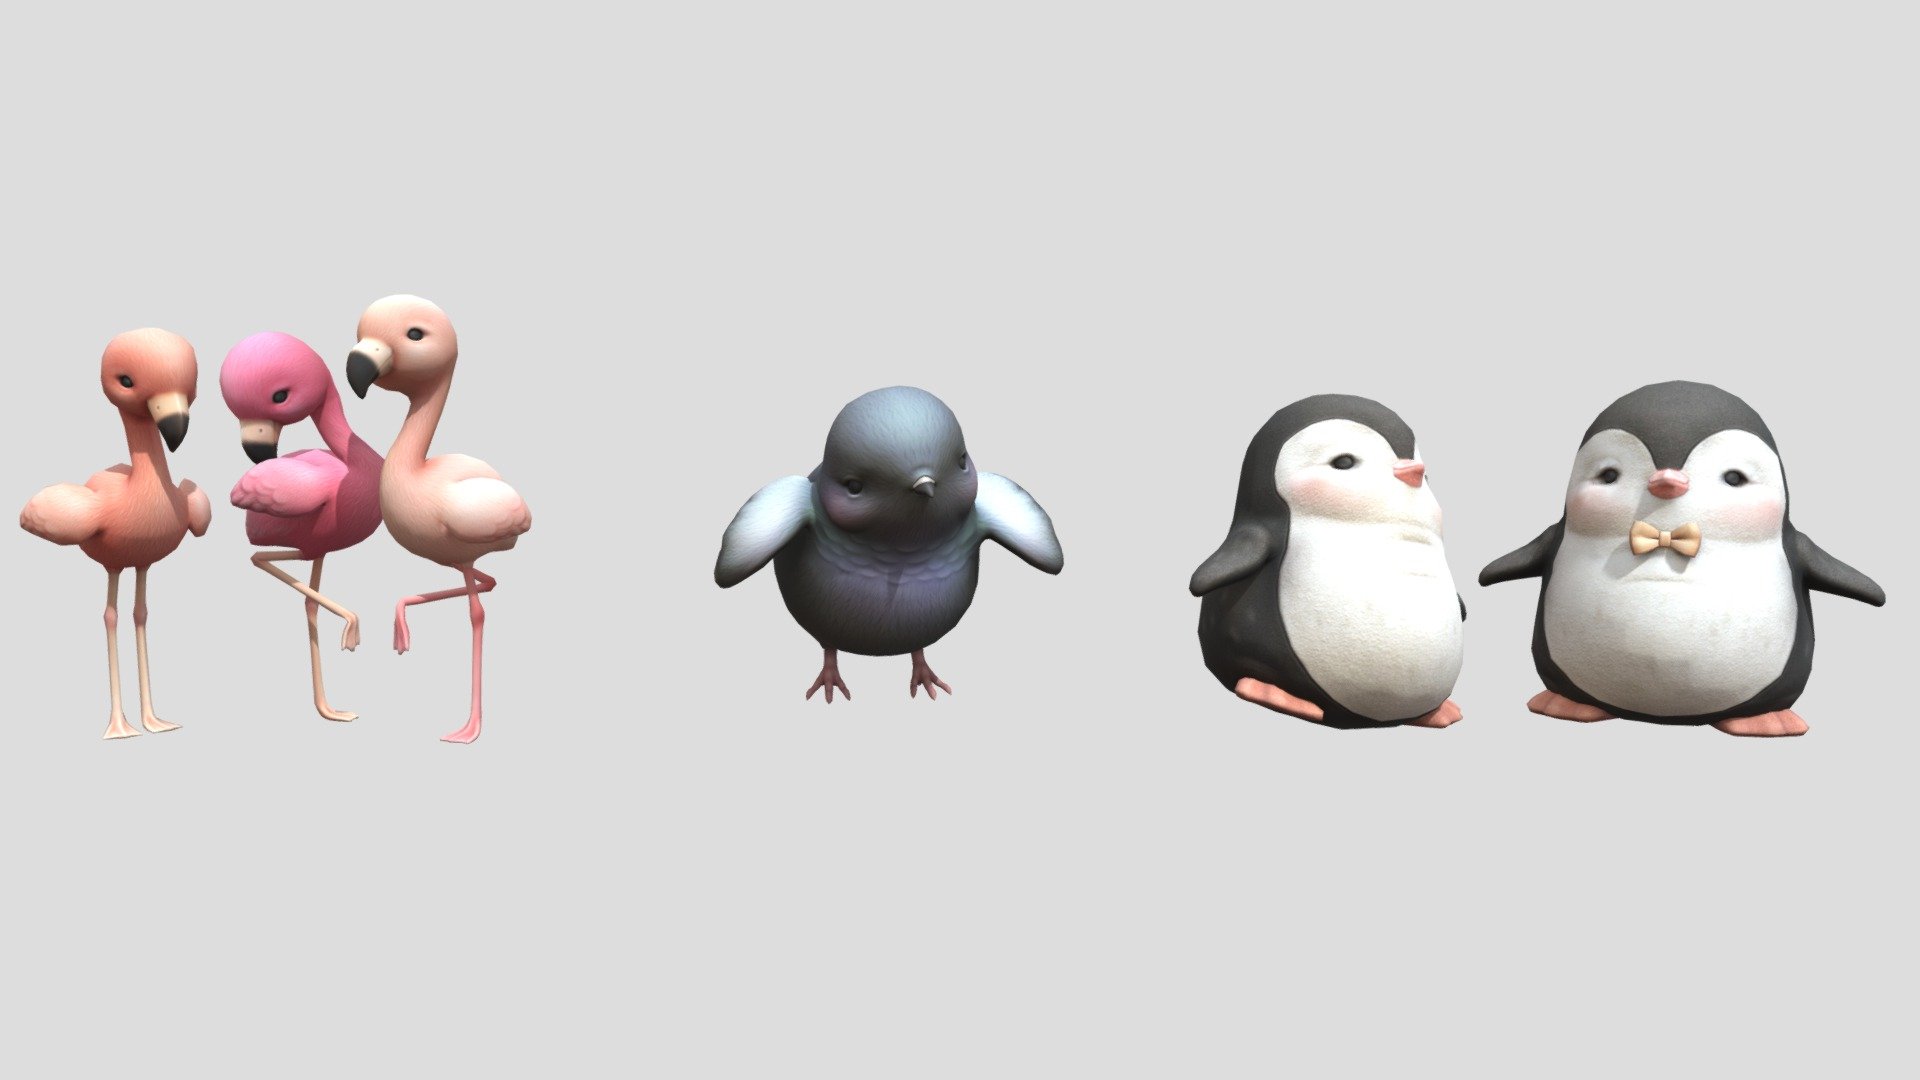 3 differents cute birds 
5 models - cute birds - Buy Royalty Free 3D model by wissemridj 3d model